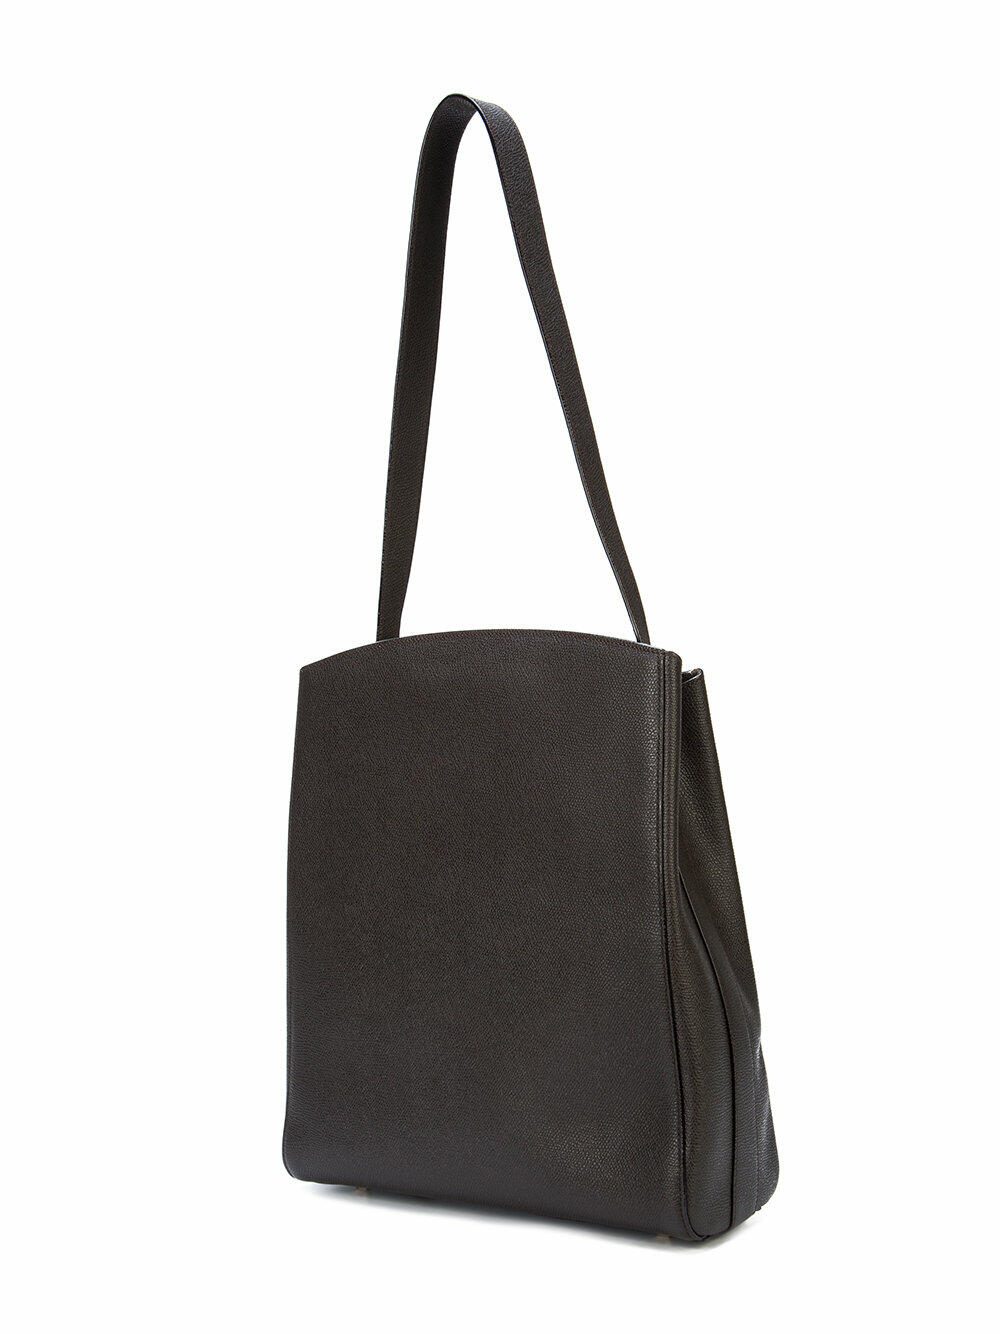 Brera crossbody Medium bag - Black